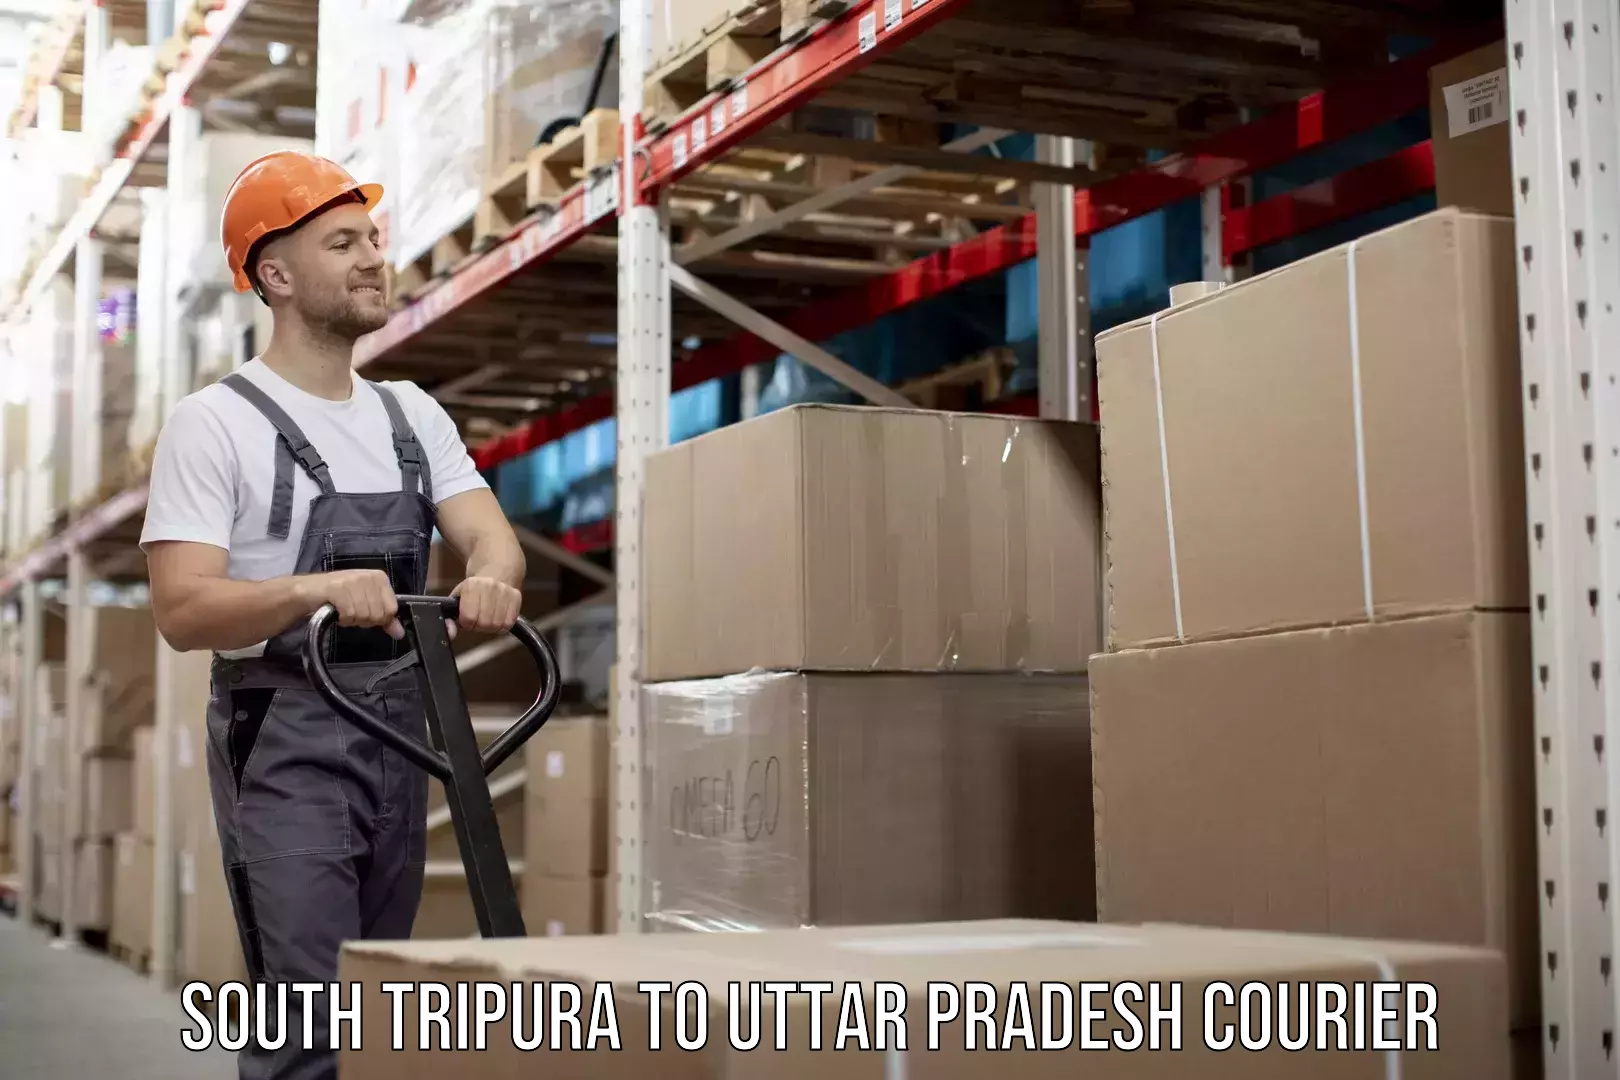 Door-to-door freight service South Tripura to Uttar Pradesh